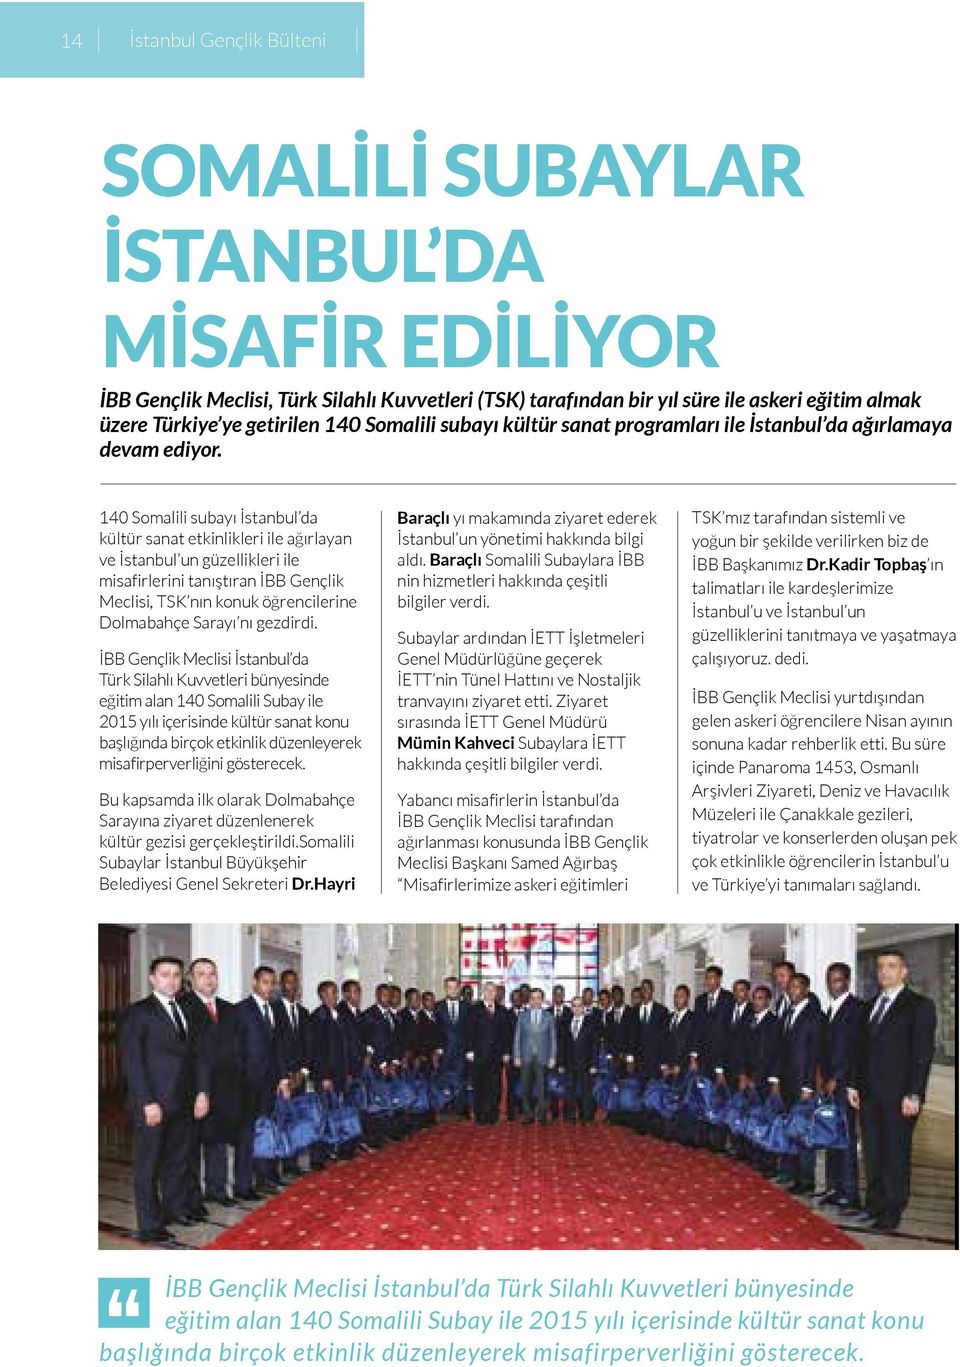 140 Somalili subayı İstanbul da kültür sanat etkinlikleri ile ağırlayan ve İstanbul un güzellikleri ile misafirlerini tanıştıran İBB Gençlik Meclisi, TSK nın konuk öğrencilerine Dolmabahçe Sarayı nı